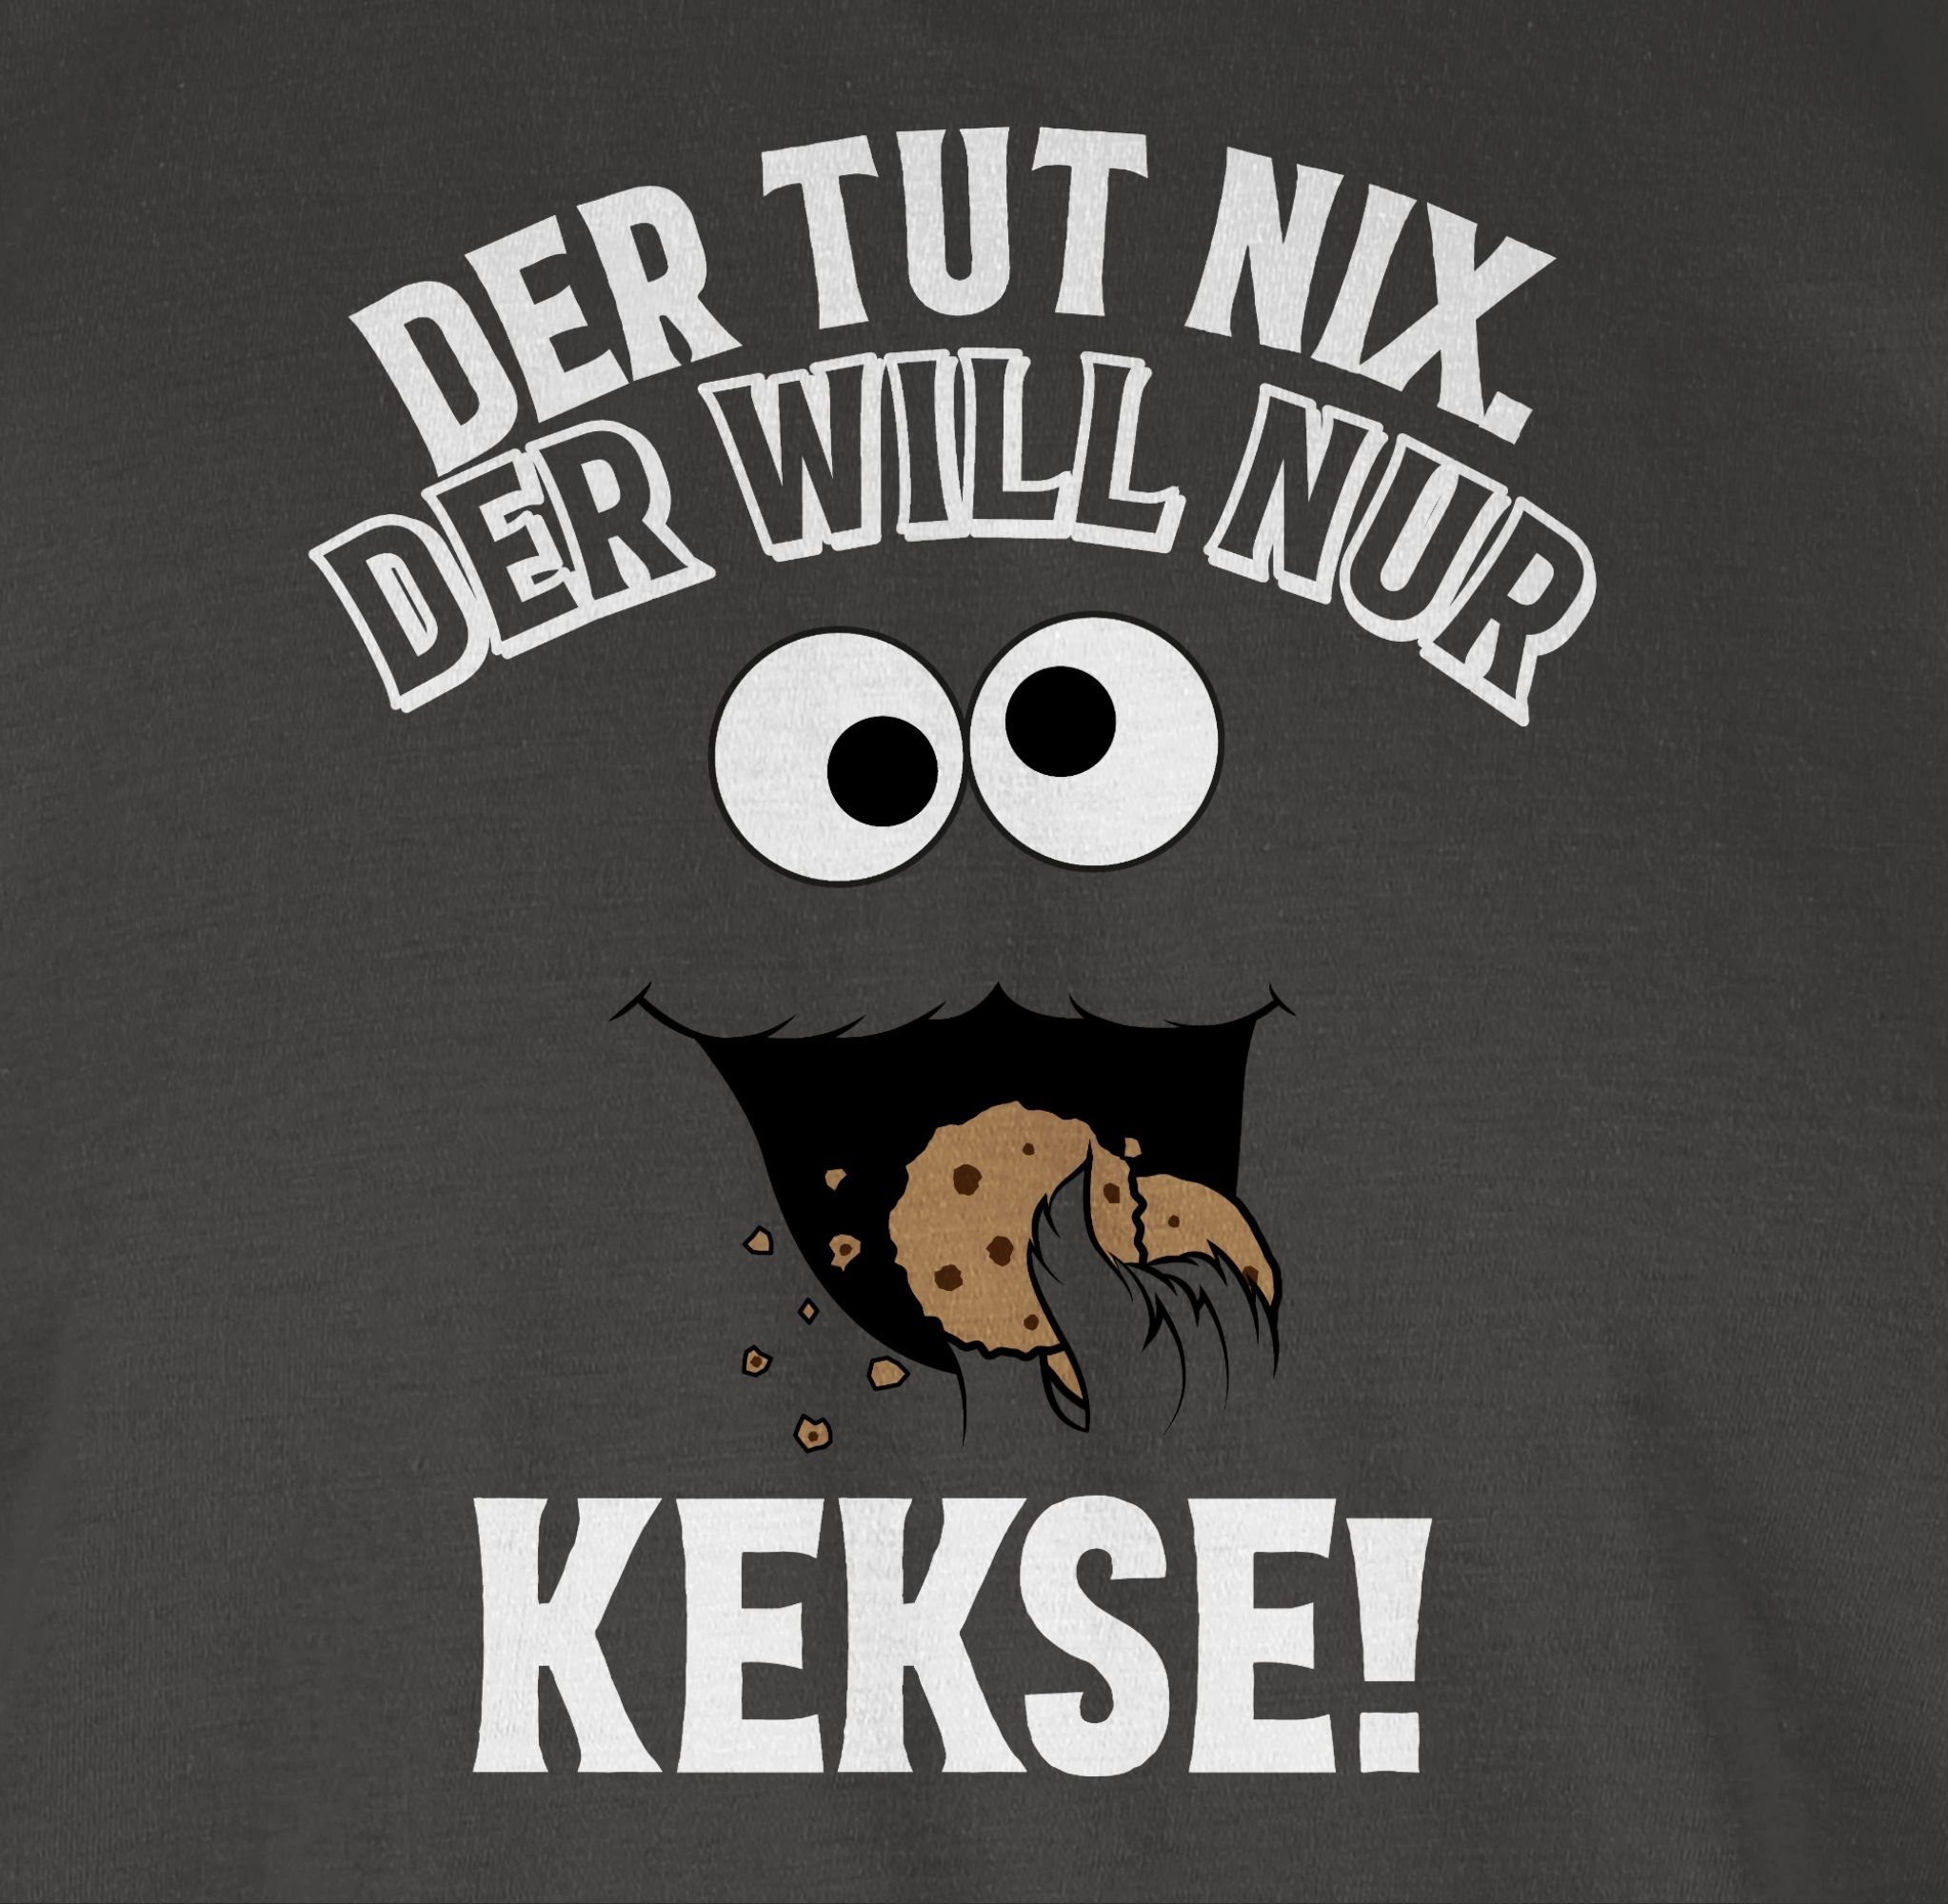 Shirtracer T-Shirt Der Kekse! nix. tut will Outfit Der 2 - Dunkelgrau nur weiß/schwarz Karneval